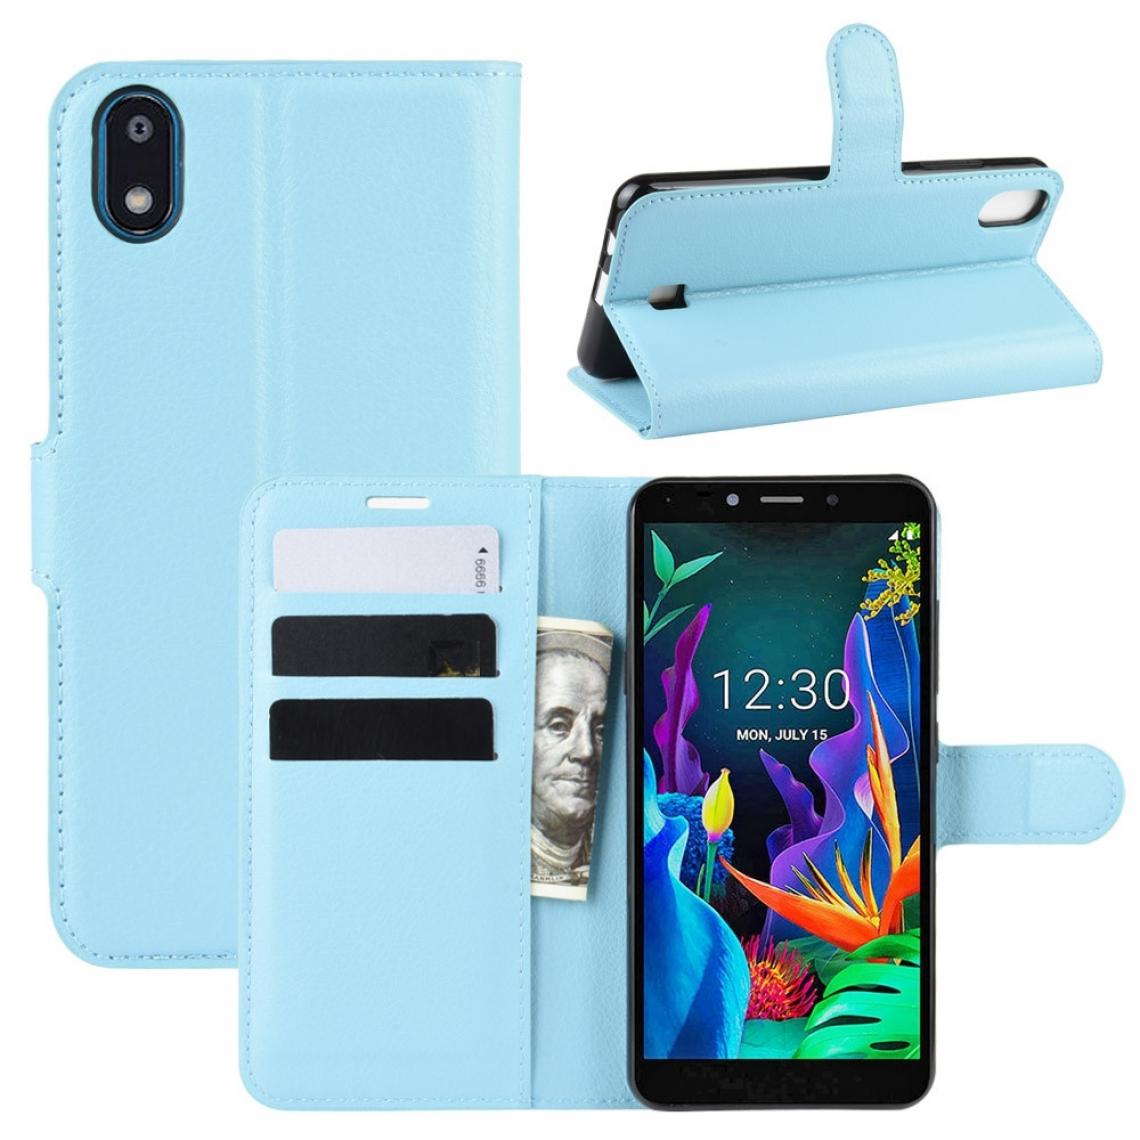 Wewoo - Housse Coque Pour LG K20 2019 Etui à rabat horizontal en cuir texturé litchi avec étui portefeuille et porte-cartes Bleu - Coque, étui smartphone